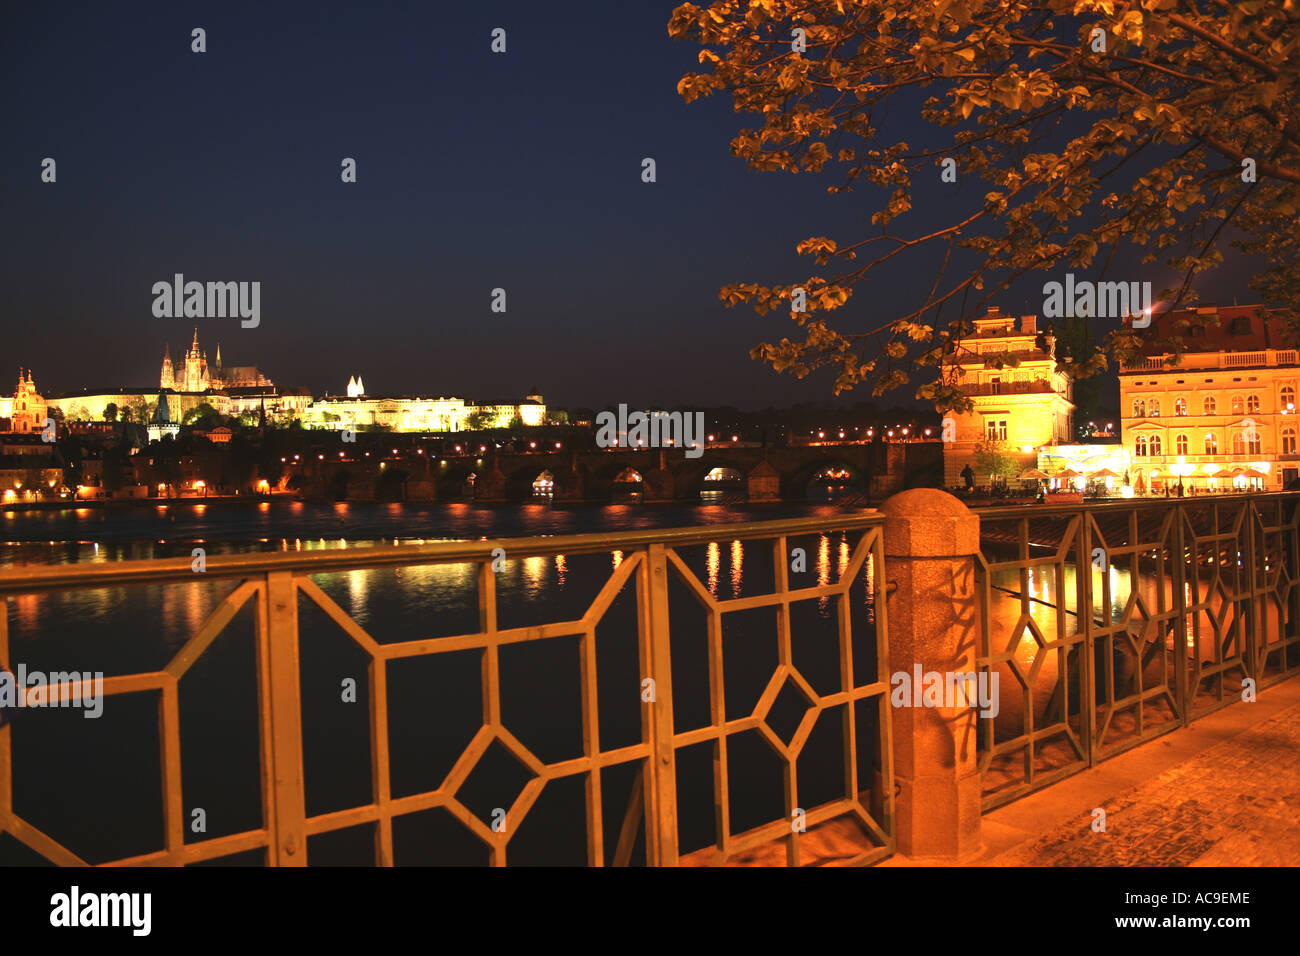 Château de Prague vu de la rive la nuit, la rivière Vltava et le pont Charles sont vus au premier plan. Banque D'Images